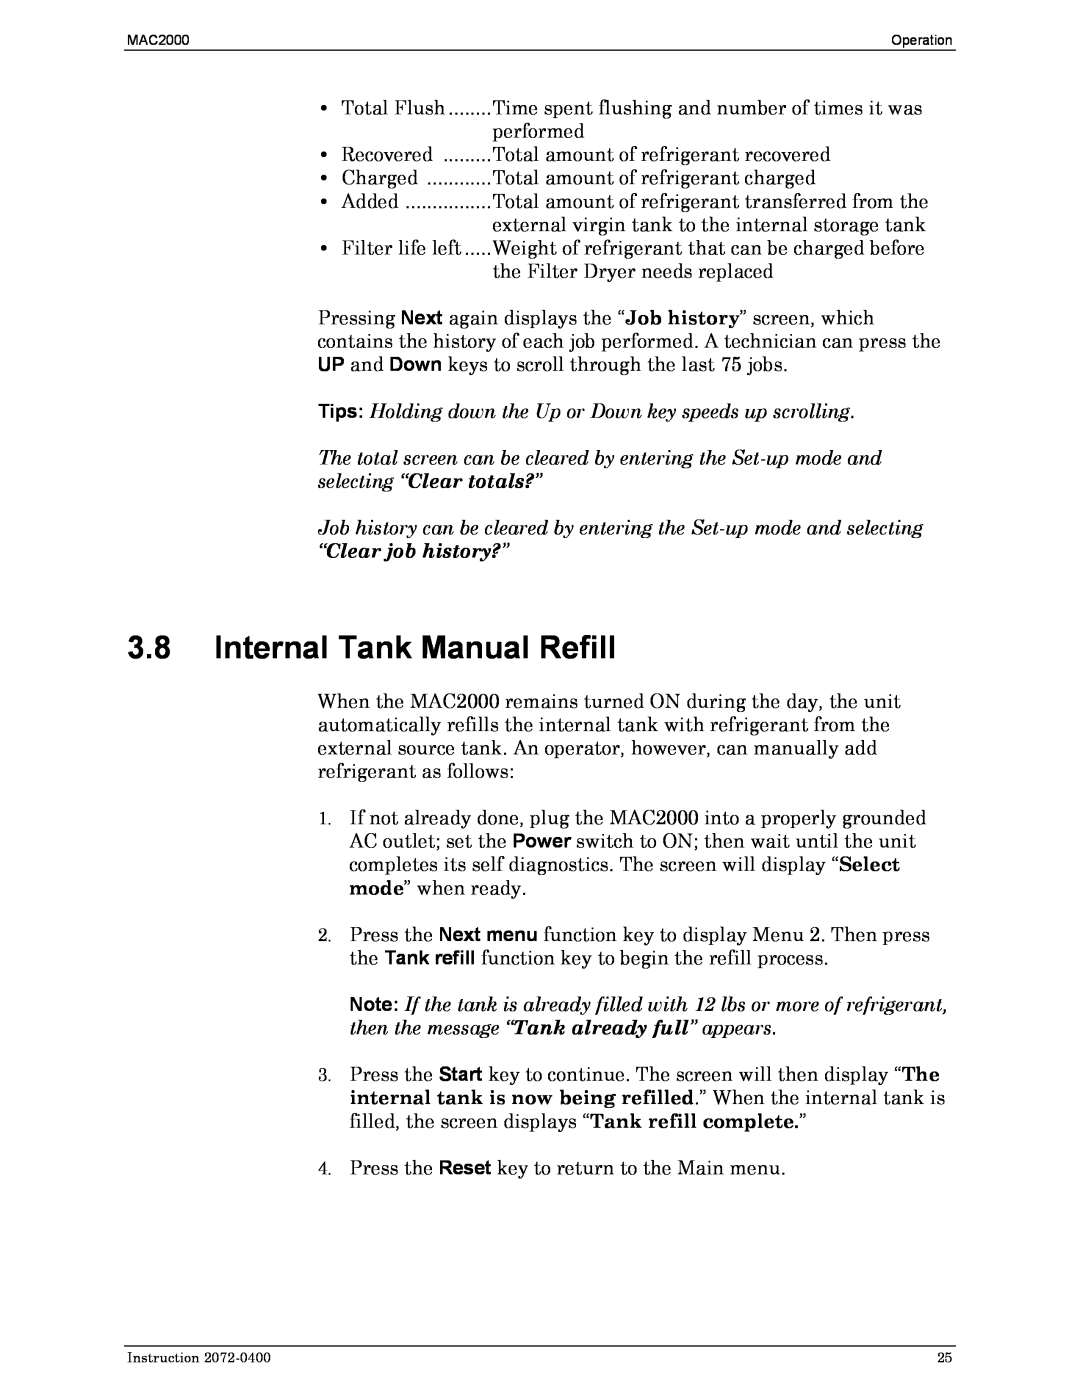 Bacharach 2072-0400 manual 3.8Internal Tank Manual Refill 